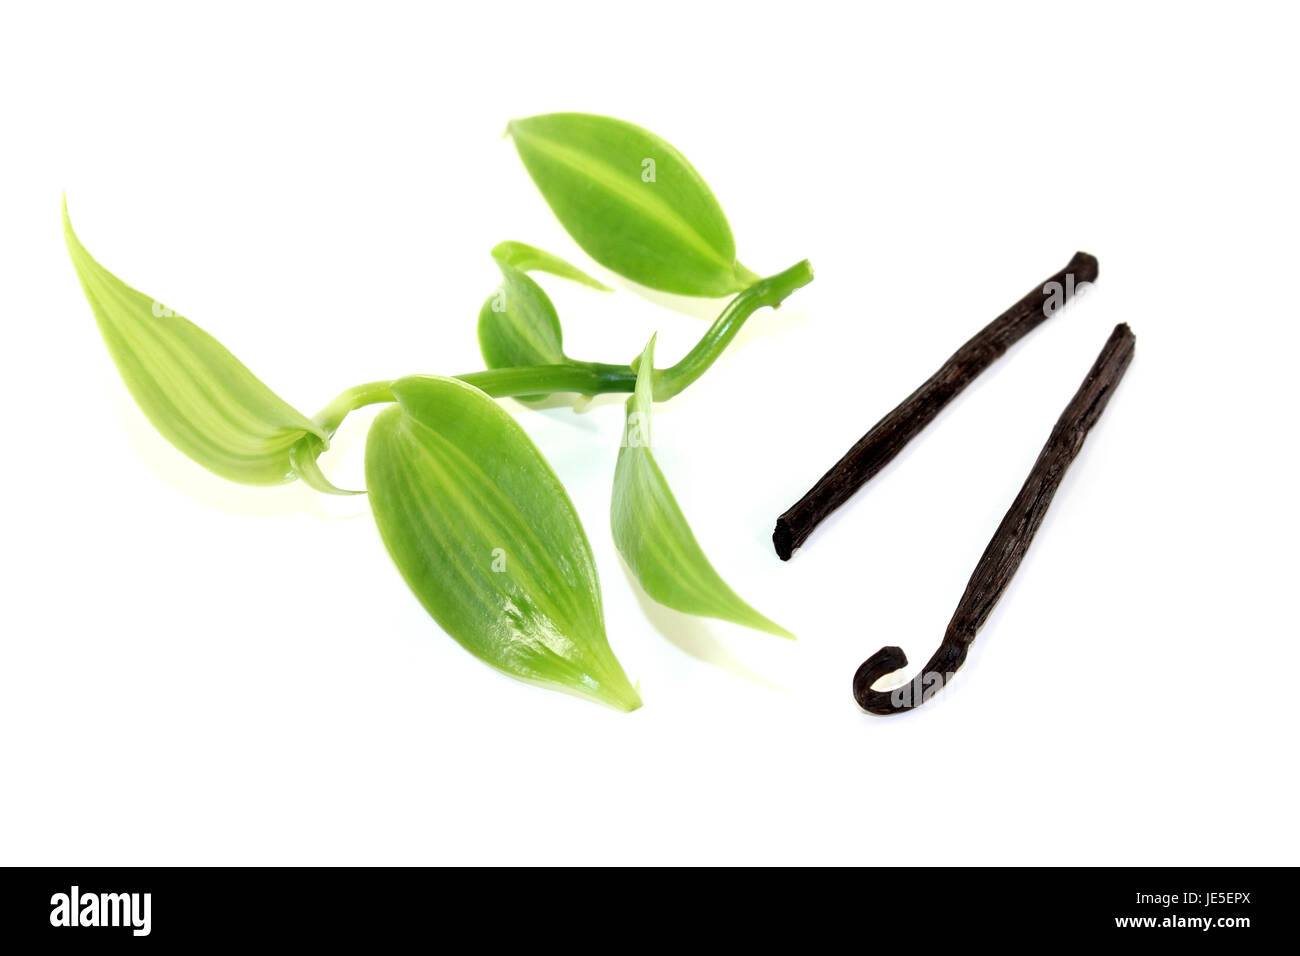 frische grüne Vanilleblätter mit Vanillestangen auf hellem Hintergrund Stock Photo